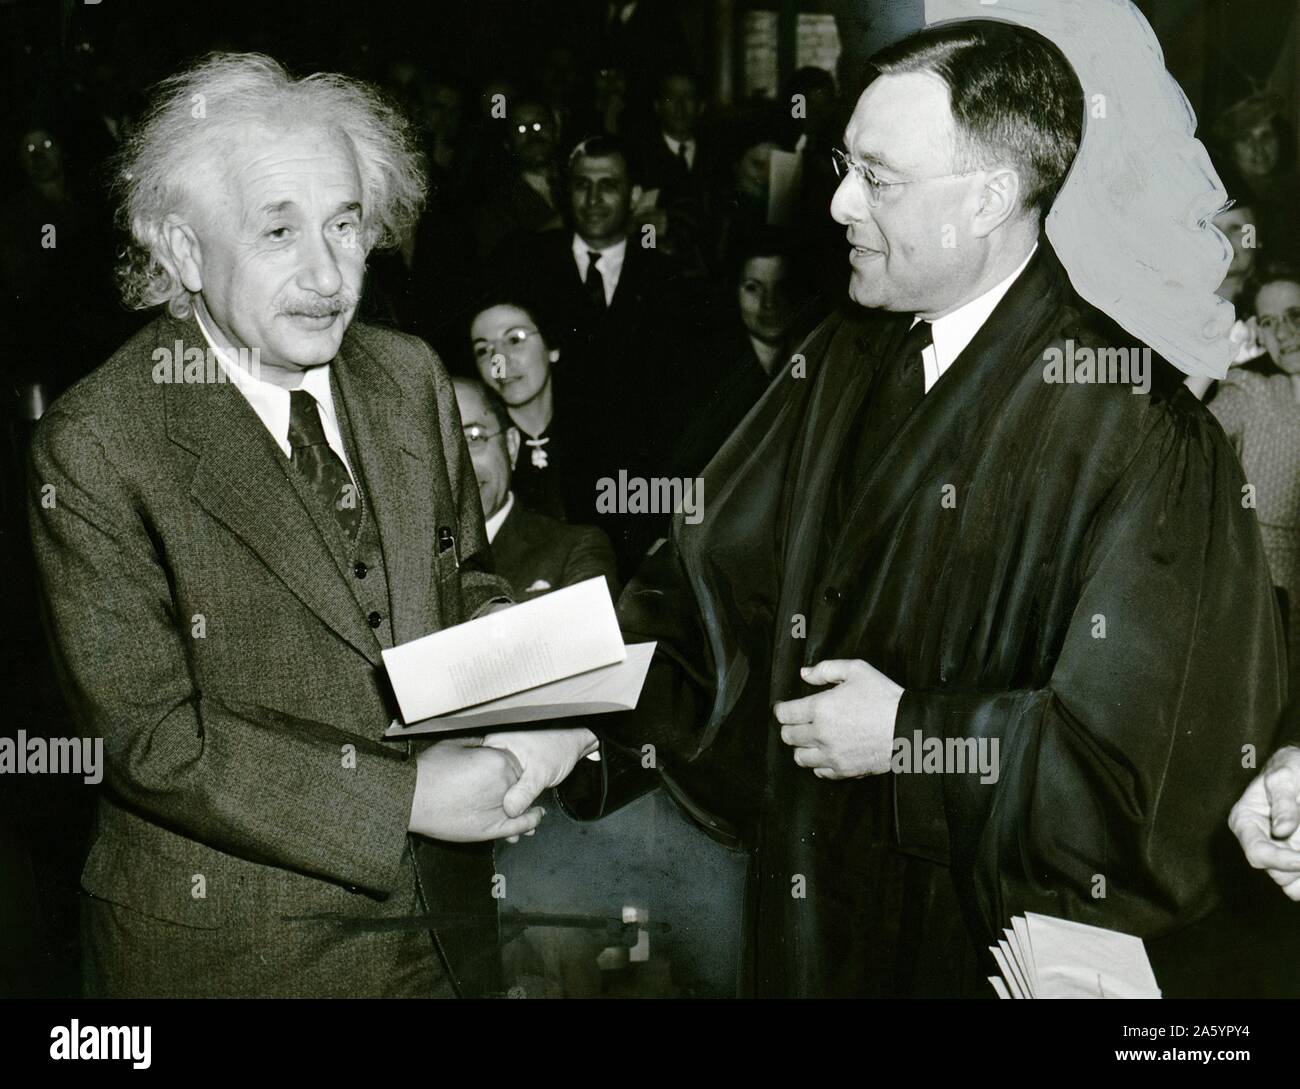 Amerika gewinnt ein berühmter Bürger. 1. Oktober 1940. Foto von Al Au Muller zeigt Albert Einstein von Richter Phillip Foreman, seine Bescheinigung über die amerikanische Staatsbürgerschaft erhalten. Stockfoto